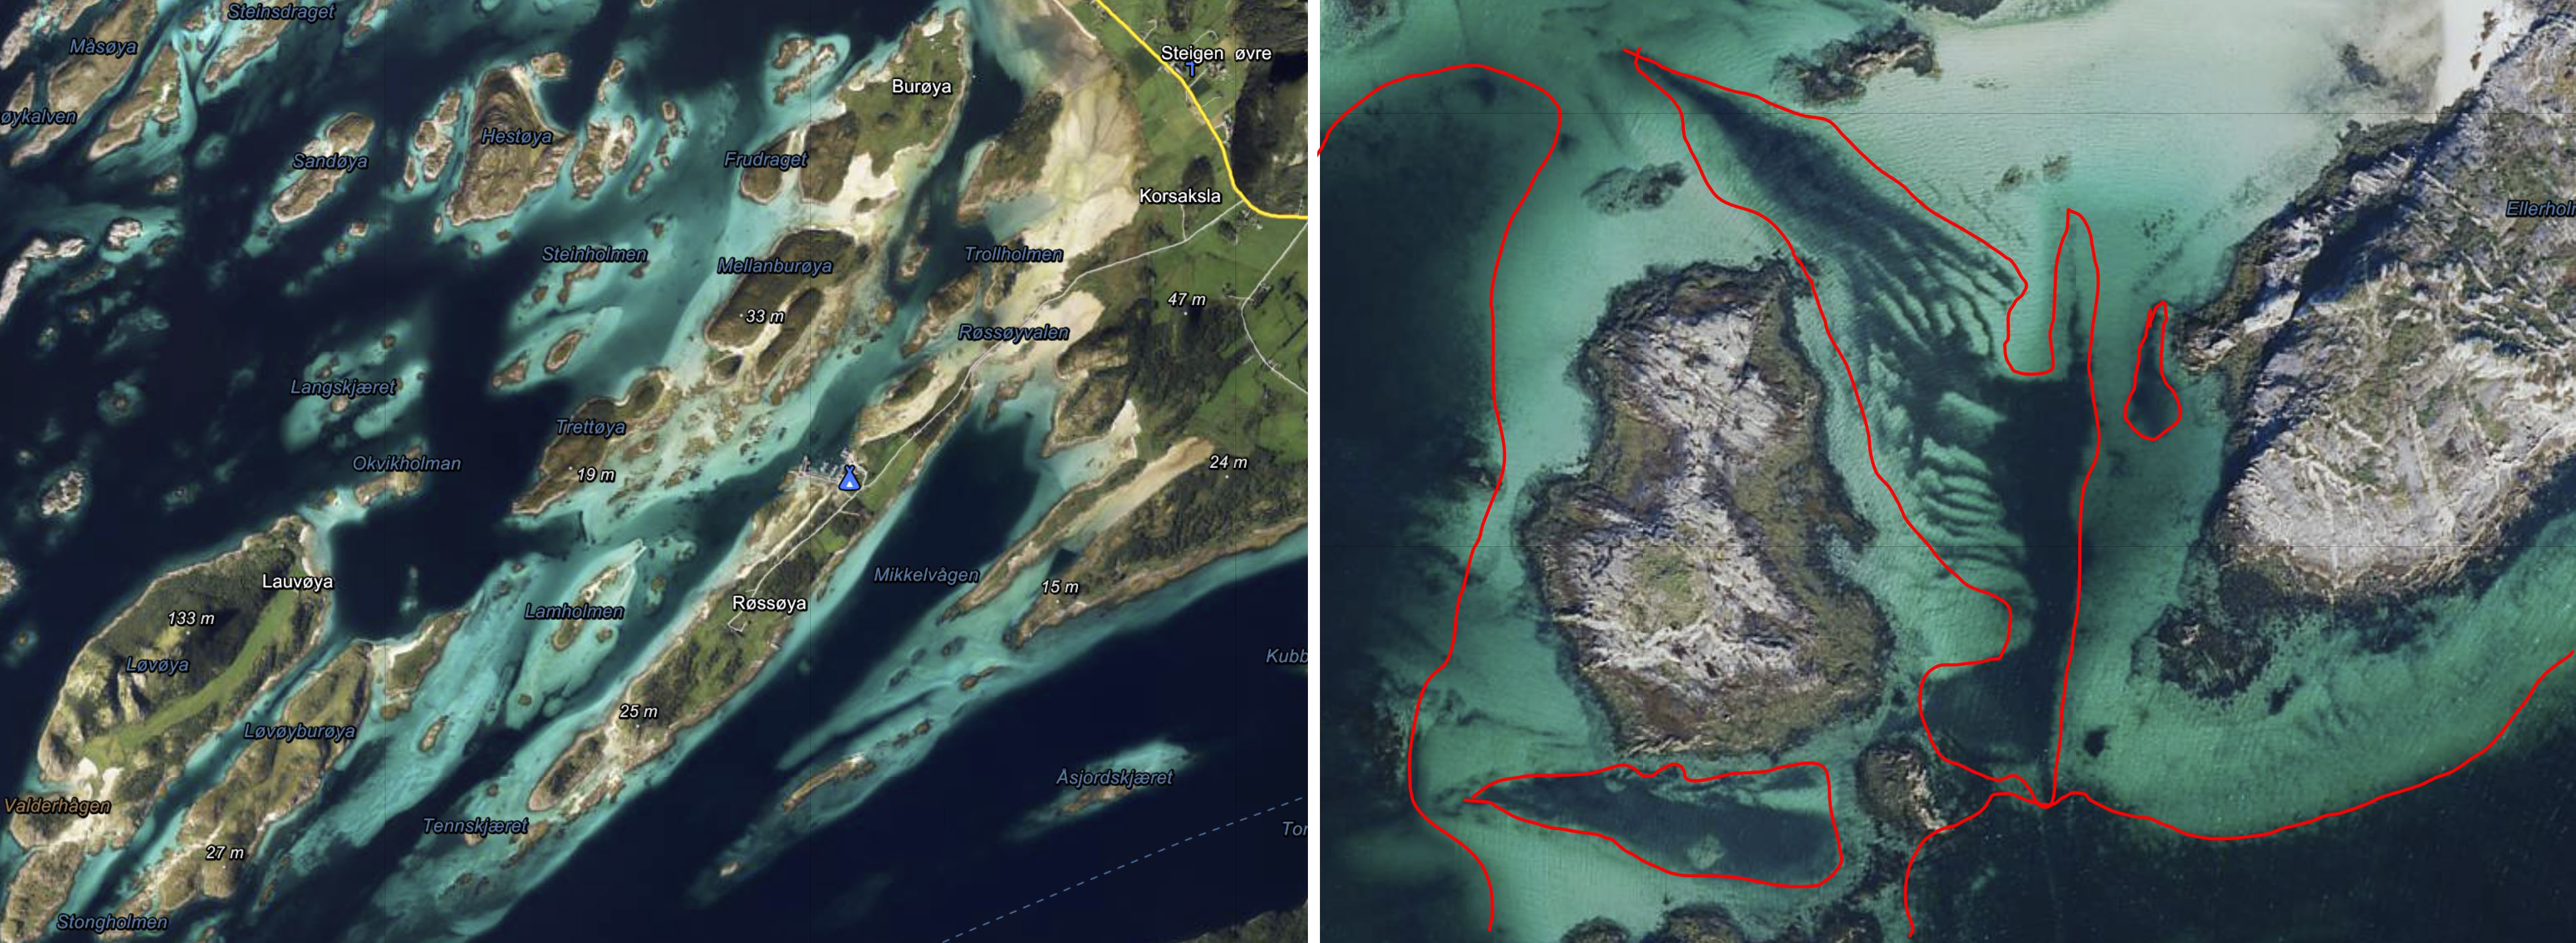 Bildet viser til venstre flyfoto fra område med ruglbunn og korallin sand. Bildet til høyre viser nærbilde av samme område der mulige ruglbunnsområder er avgrenset med rødt